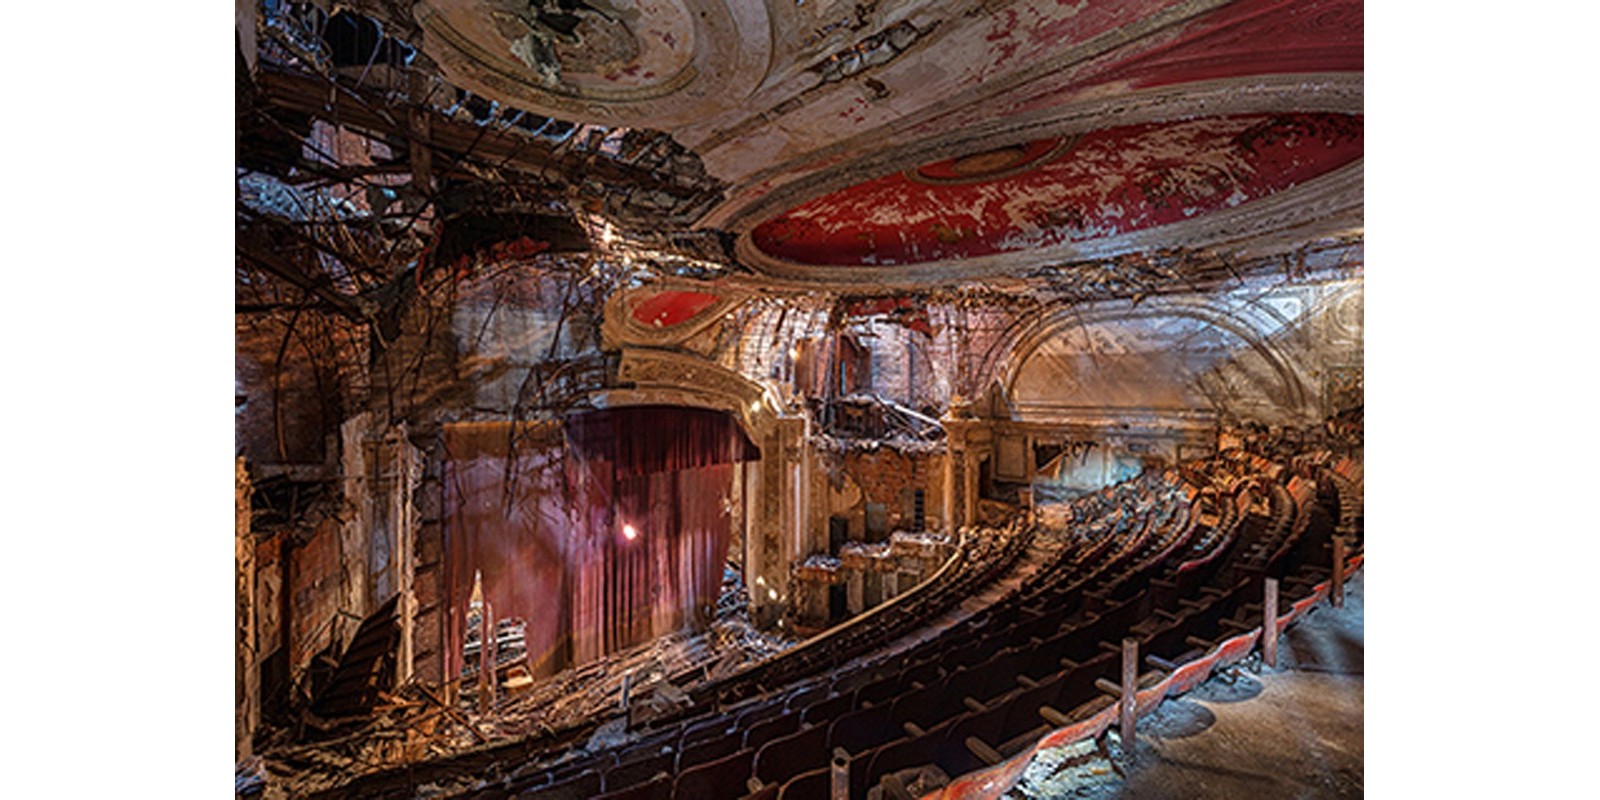 Richard Berenholtz - Abandoned Theatre, New Jersey (II)